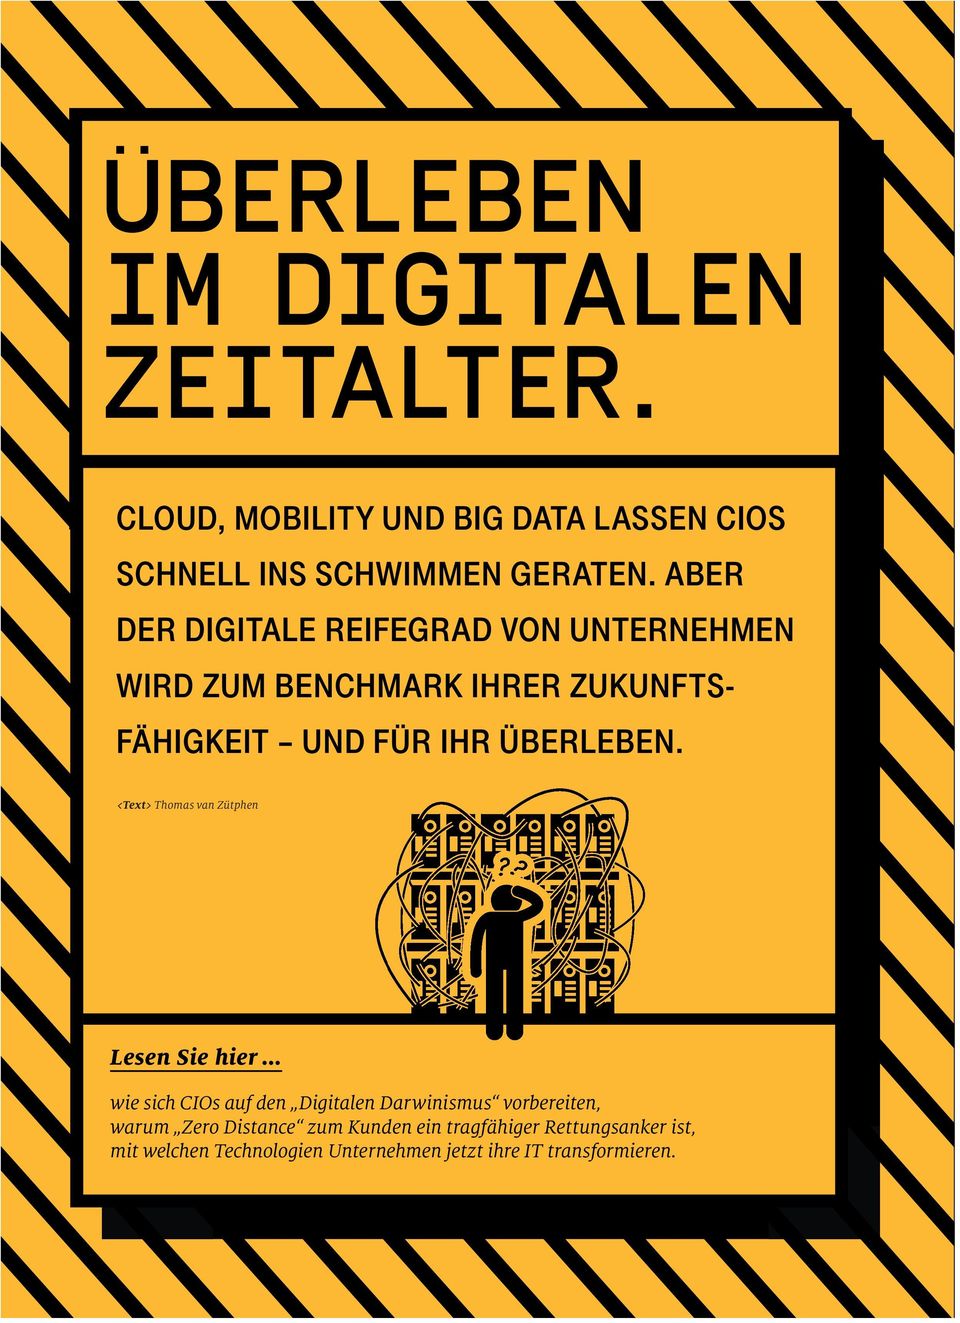 <Text> Thomas van Zütphen Lesen Sie hier wie sich CIOs auf den Digitalen Darwinismus vorbereiten, warum Zero